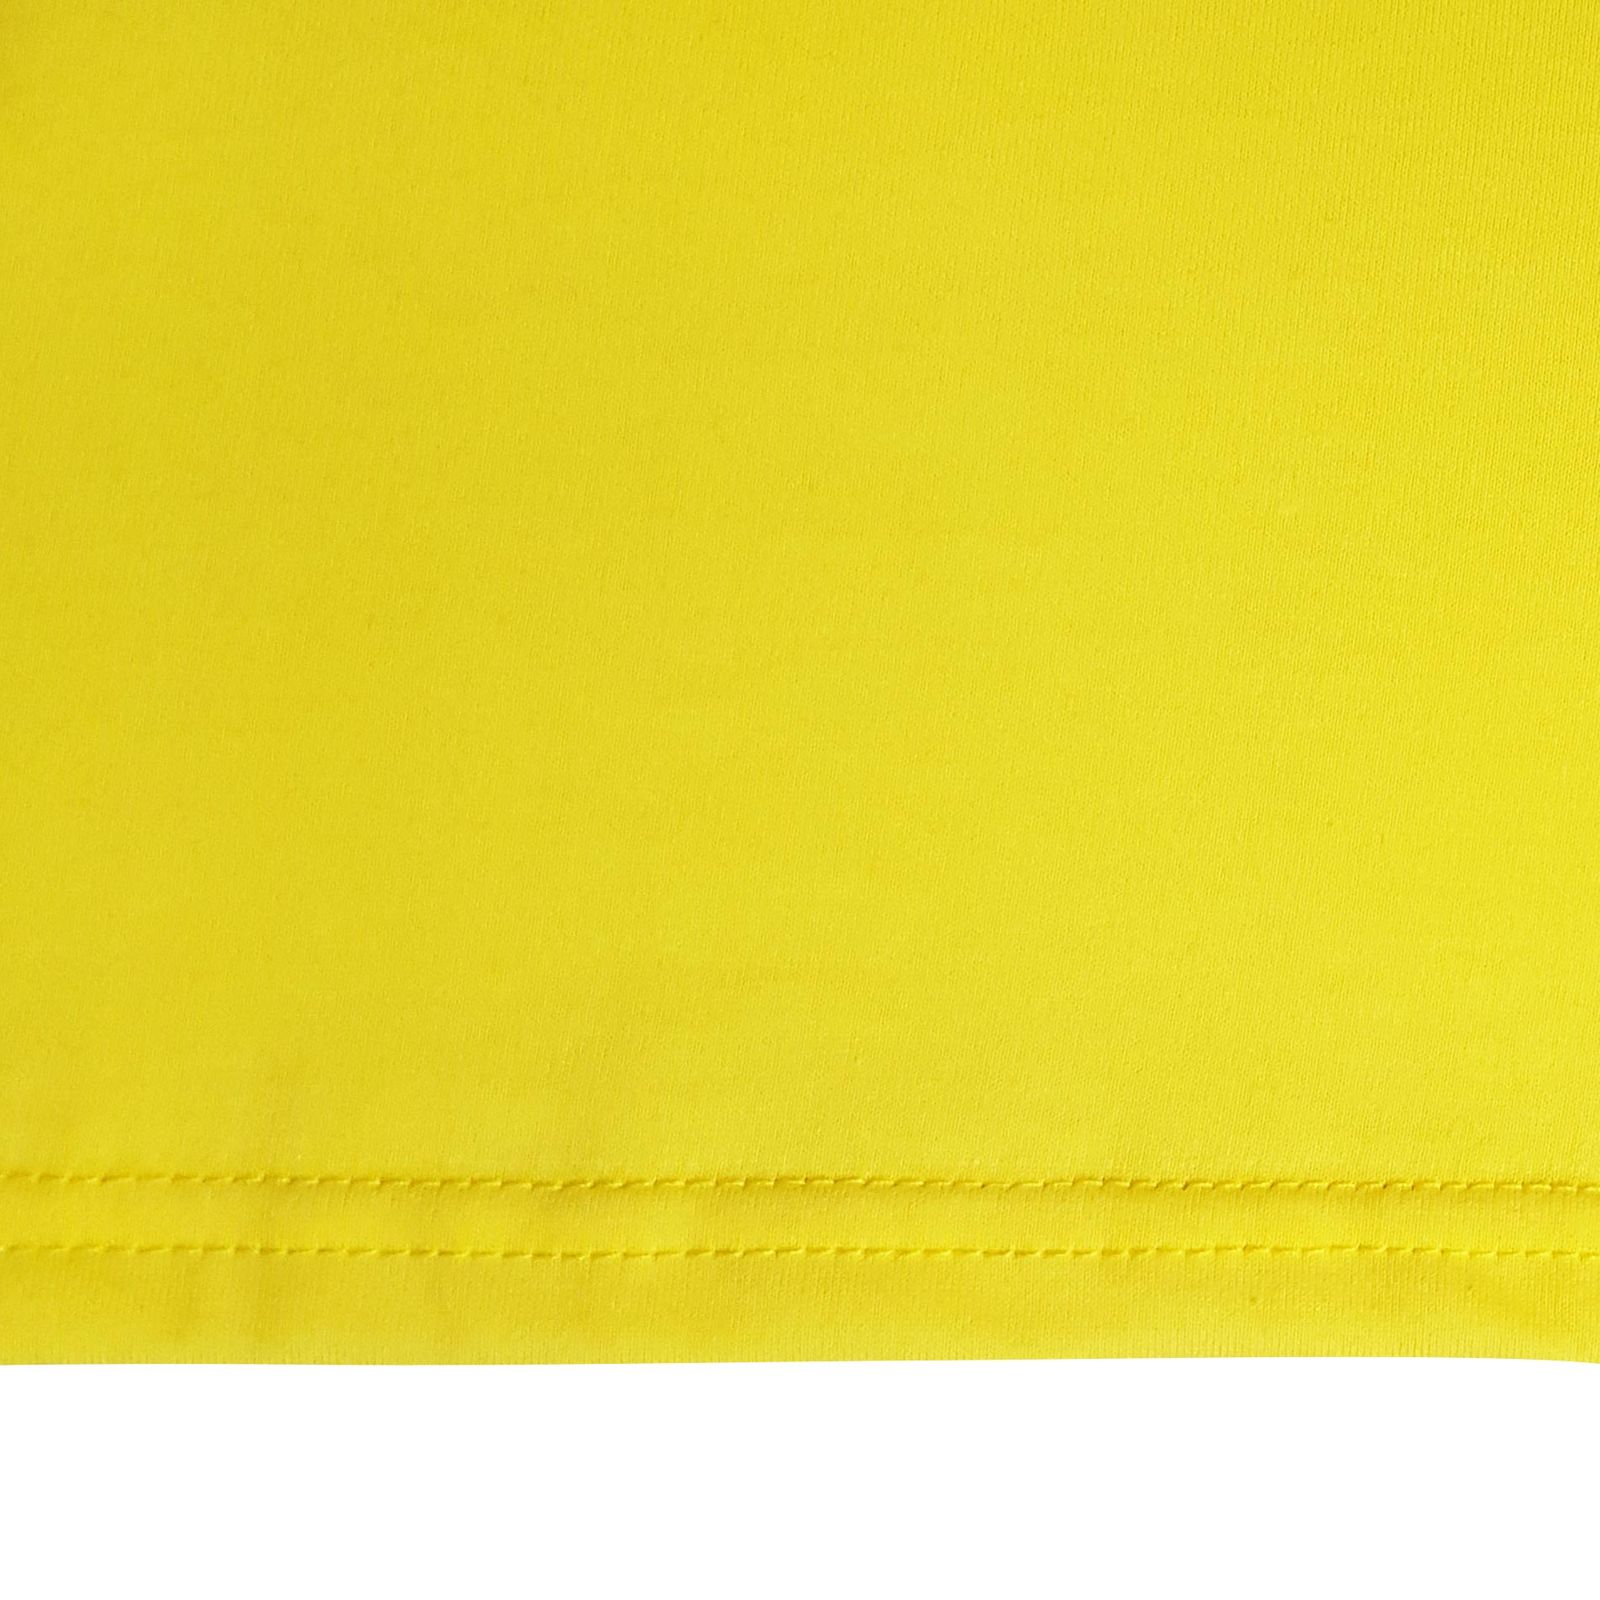 زیرپوش آستین دار مردانه ماییلدا مدل پنبه ای کد 4710 رنگ زرد -  - 7